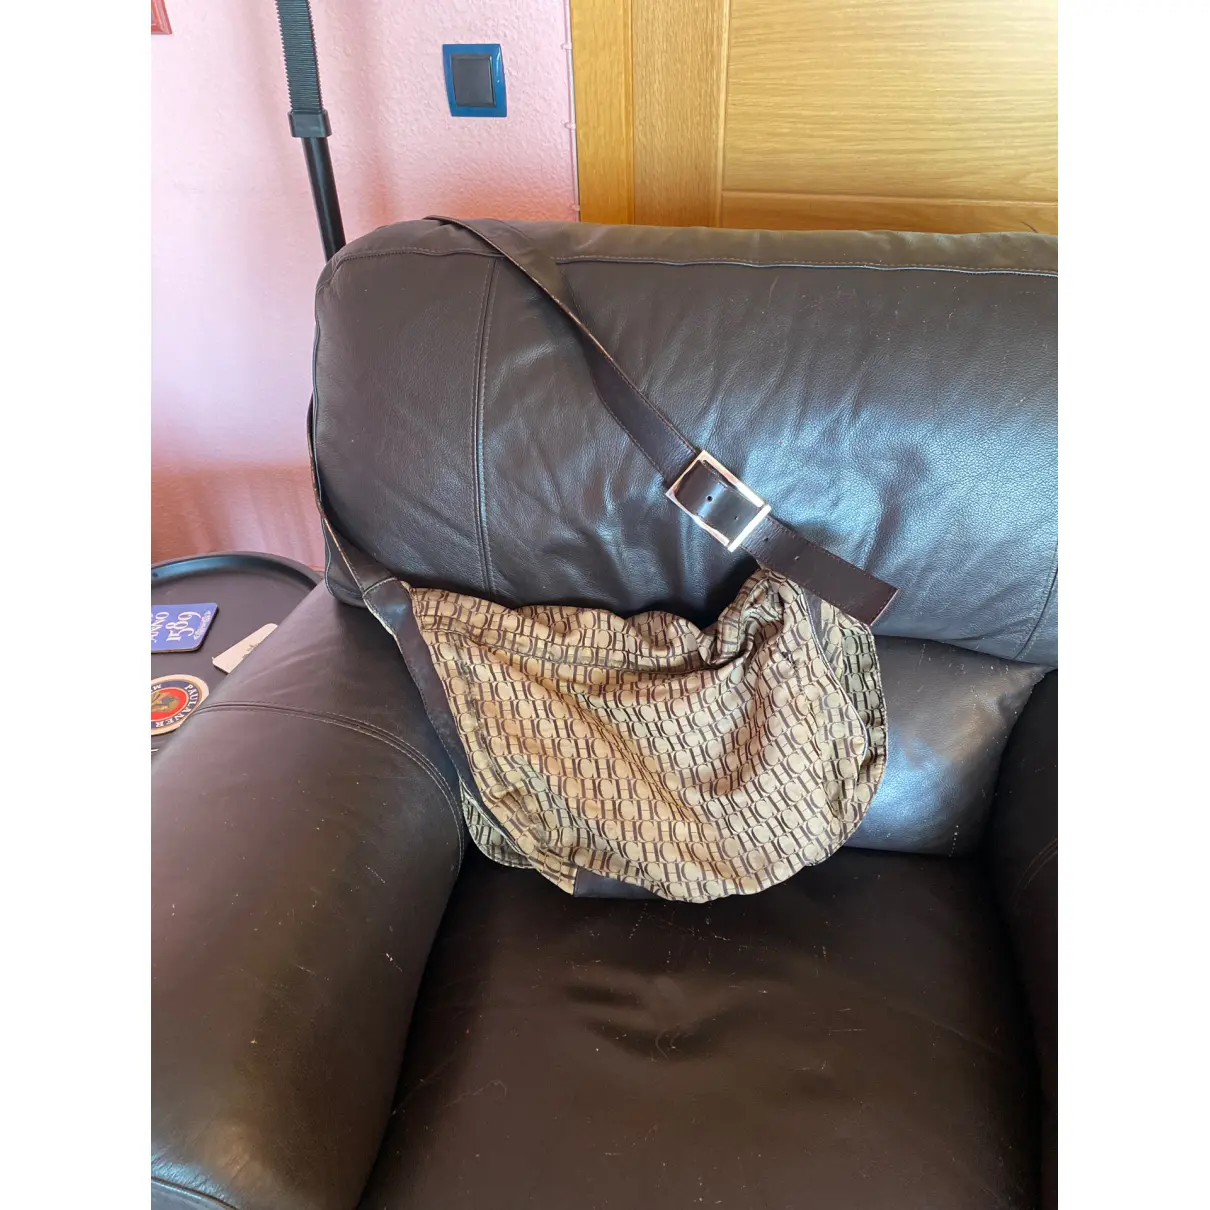 Buy Carolina Herrera Cloth handbag online